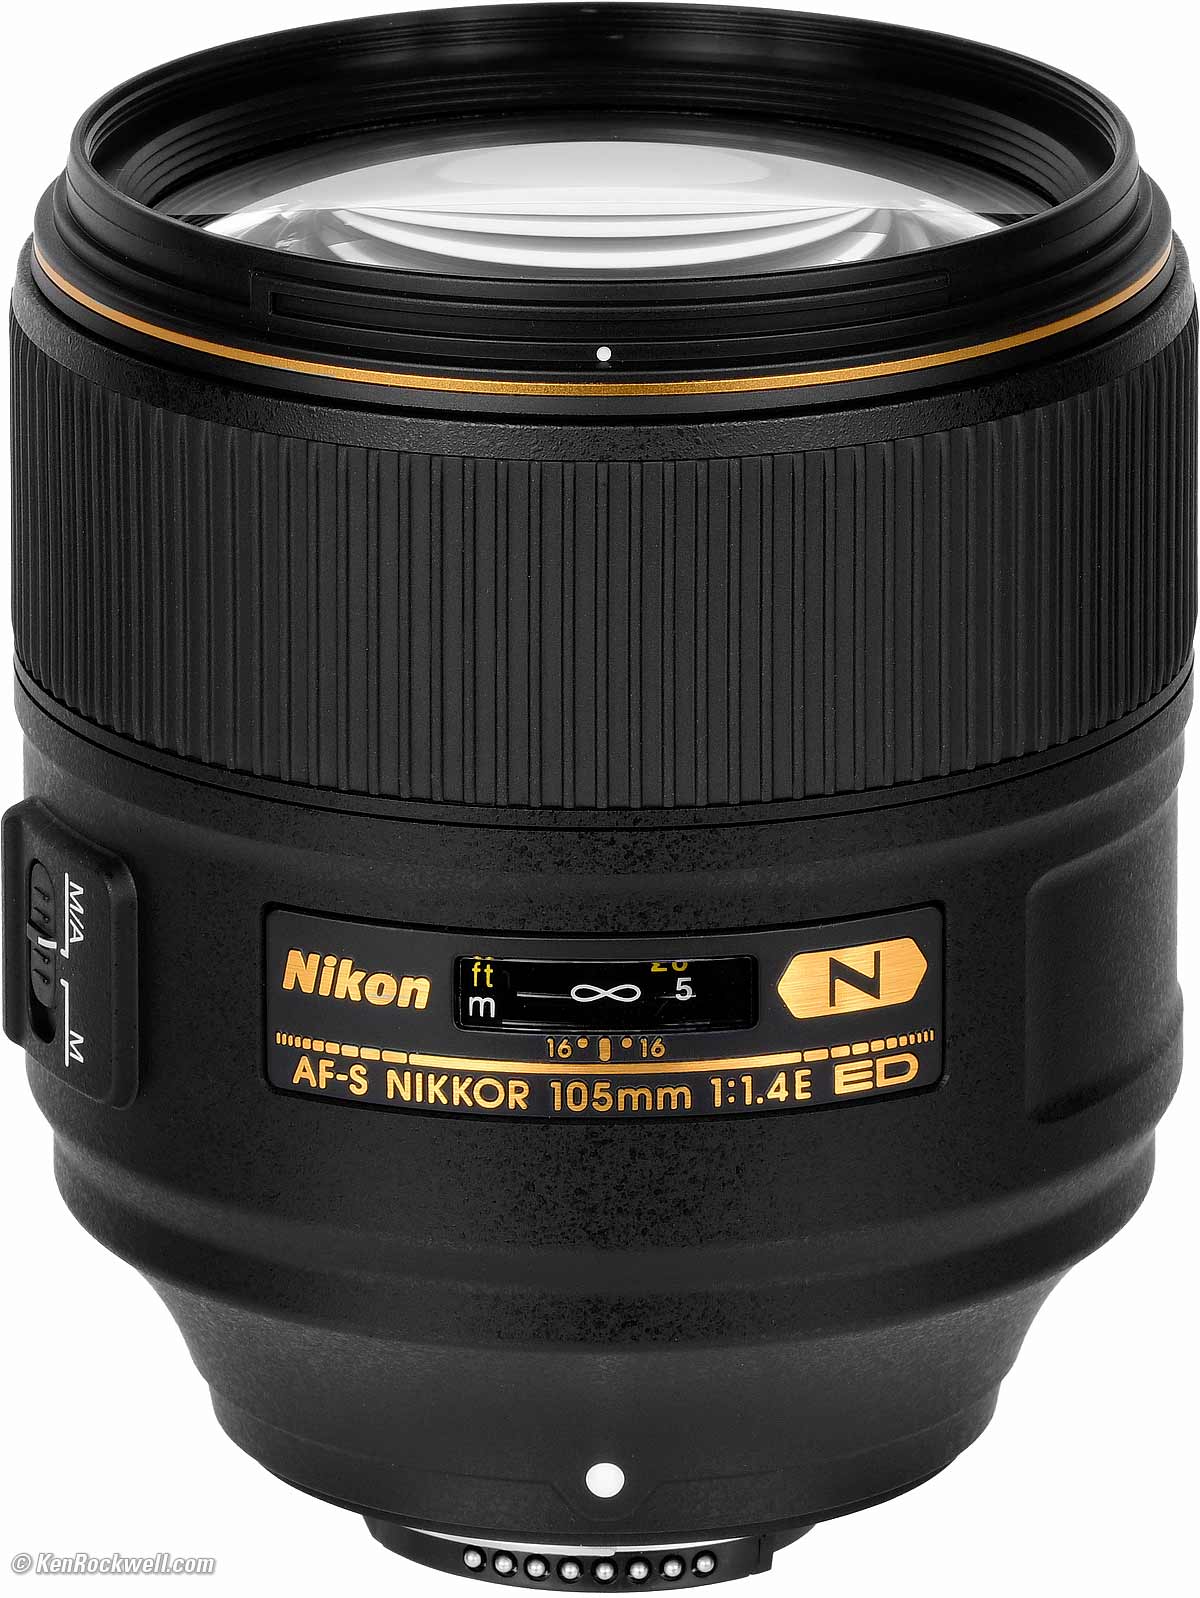 Nikon (ニコン) AF-S NIKKOR 105mm F1.4E ED